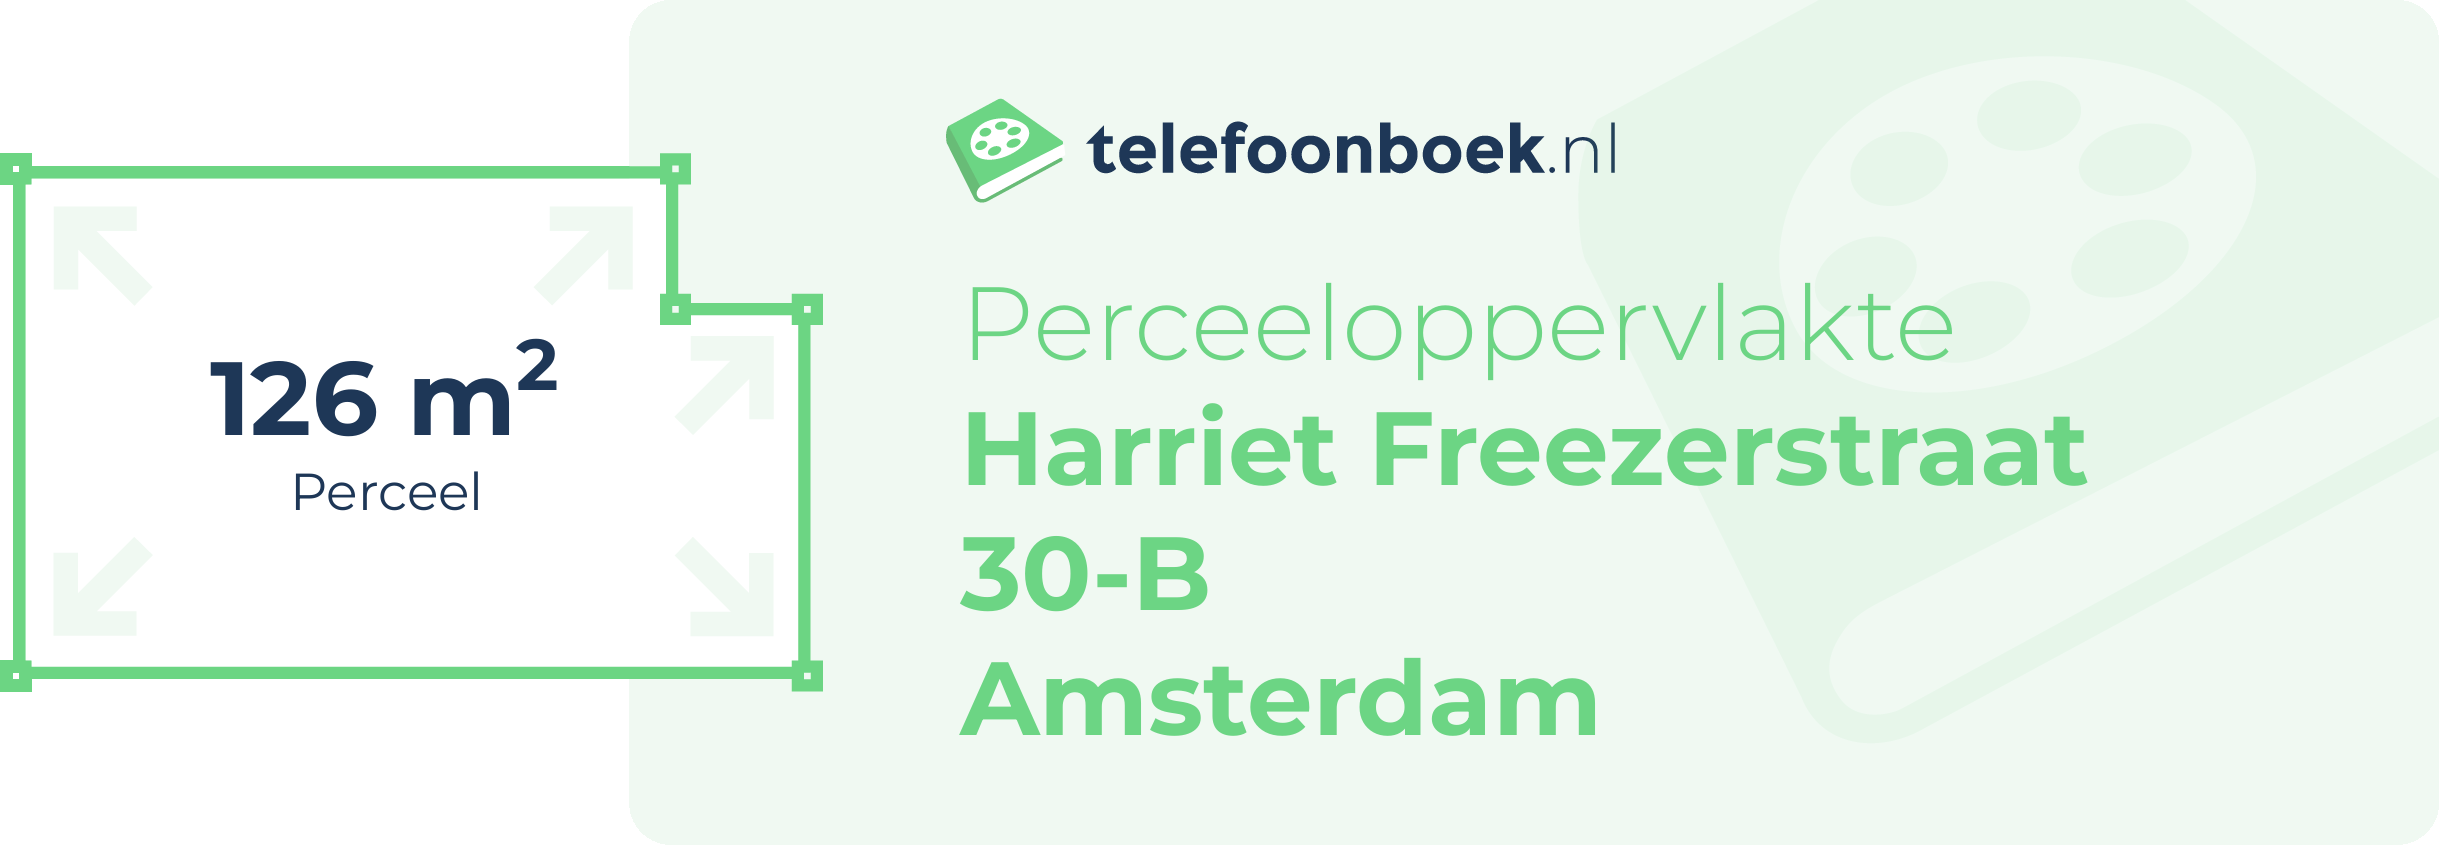 Perceeloppervlakte Harriet Freezerstraat 30-B Amsterdam